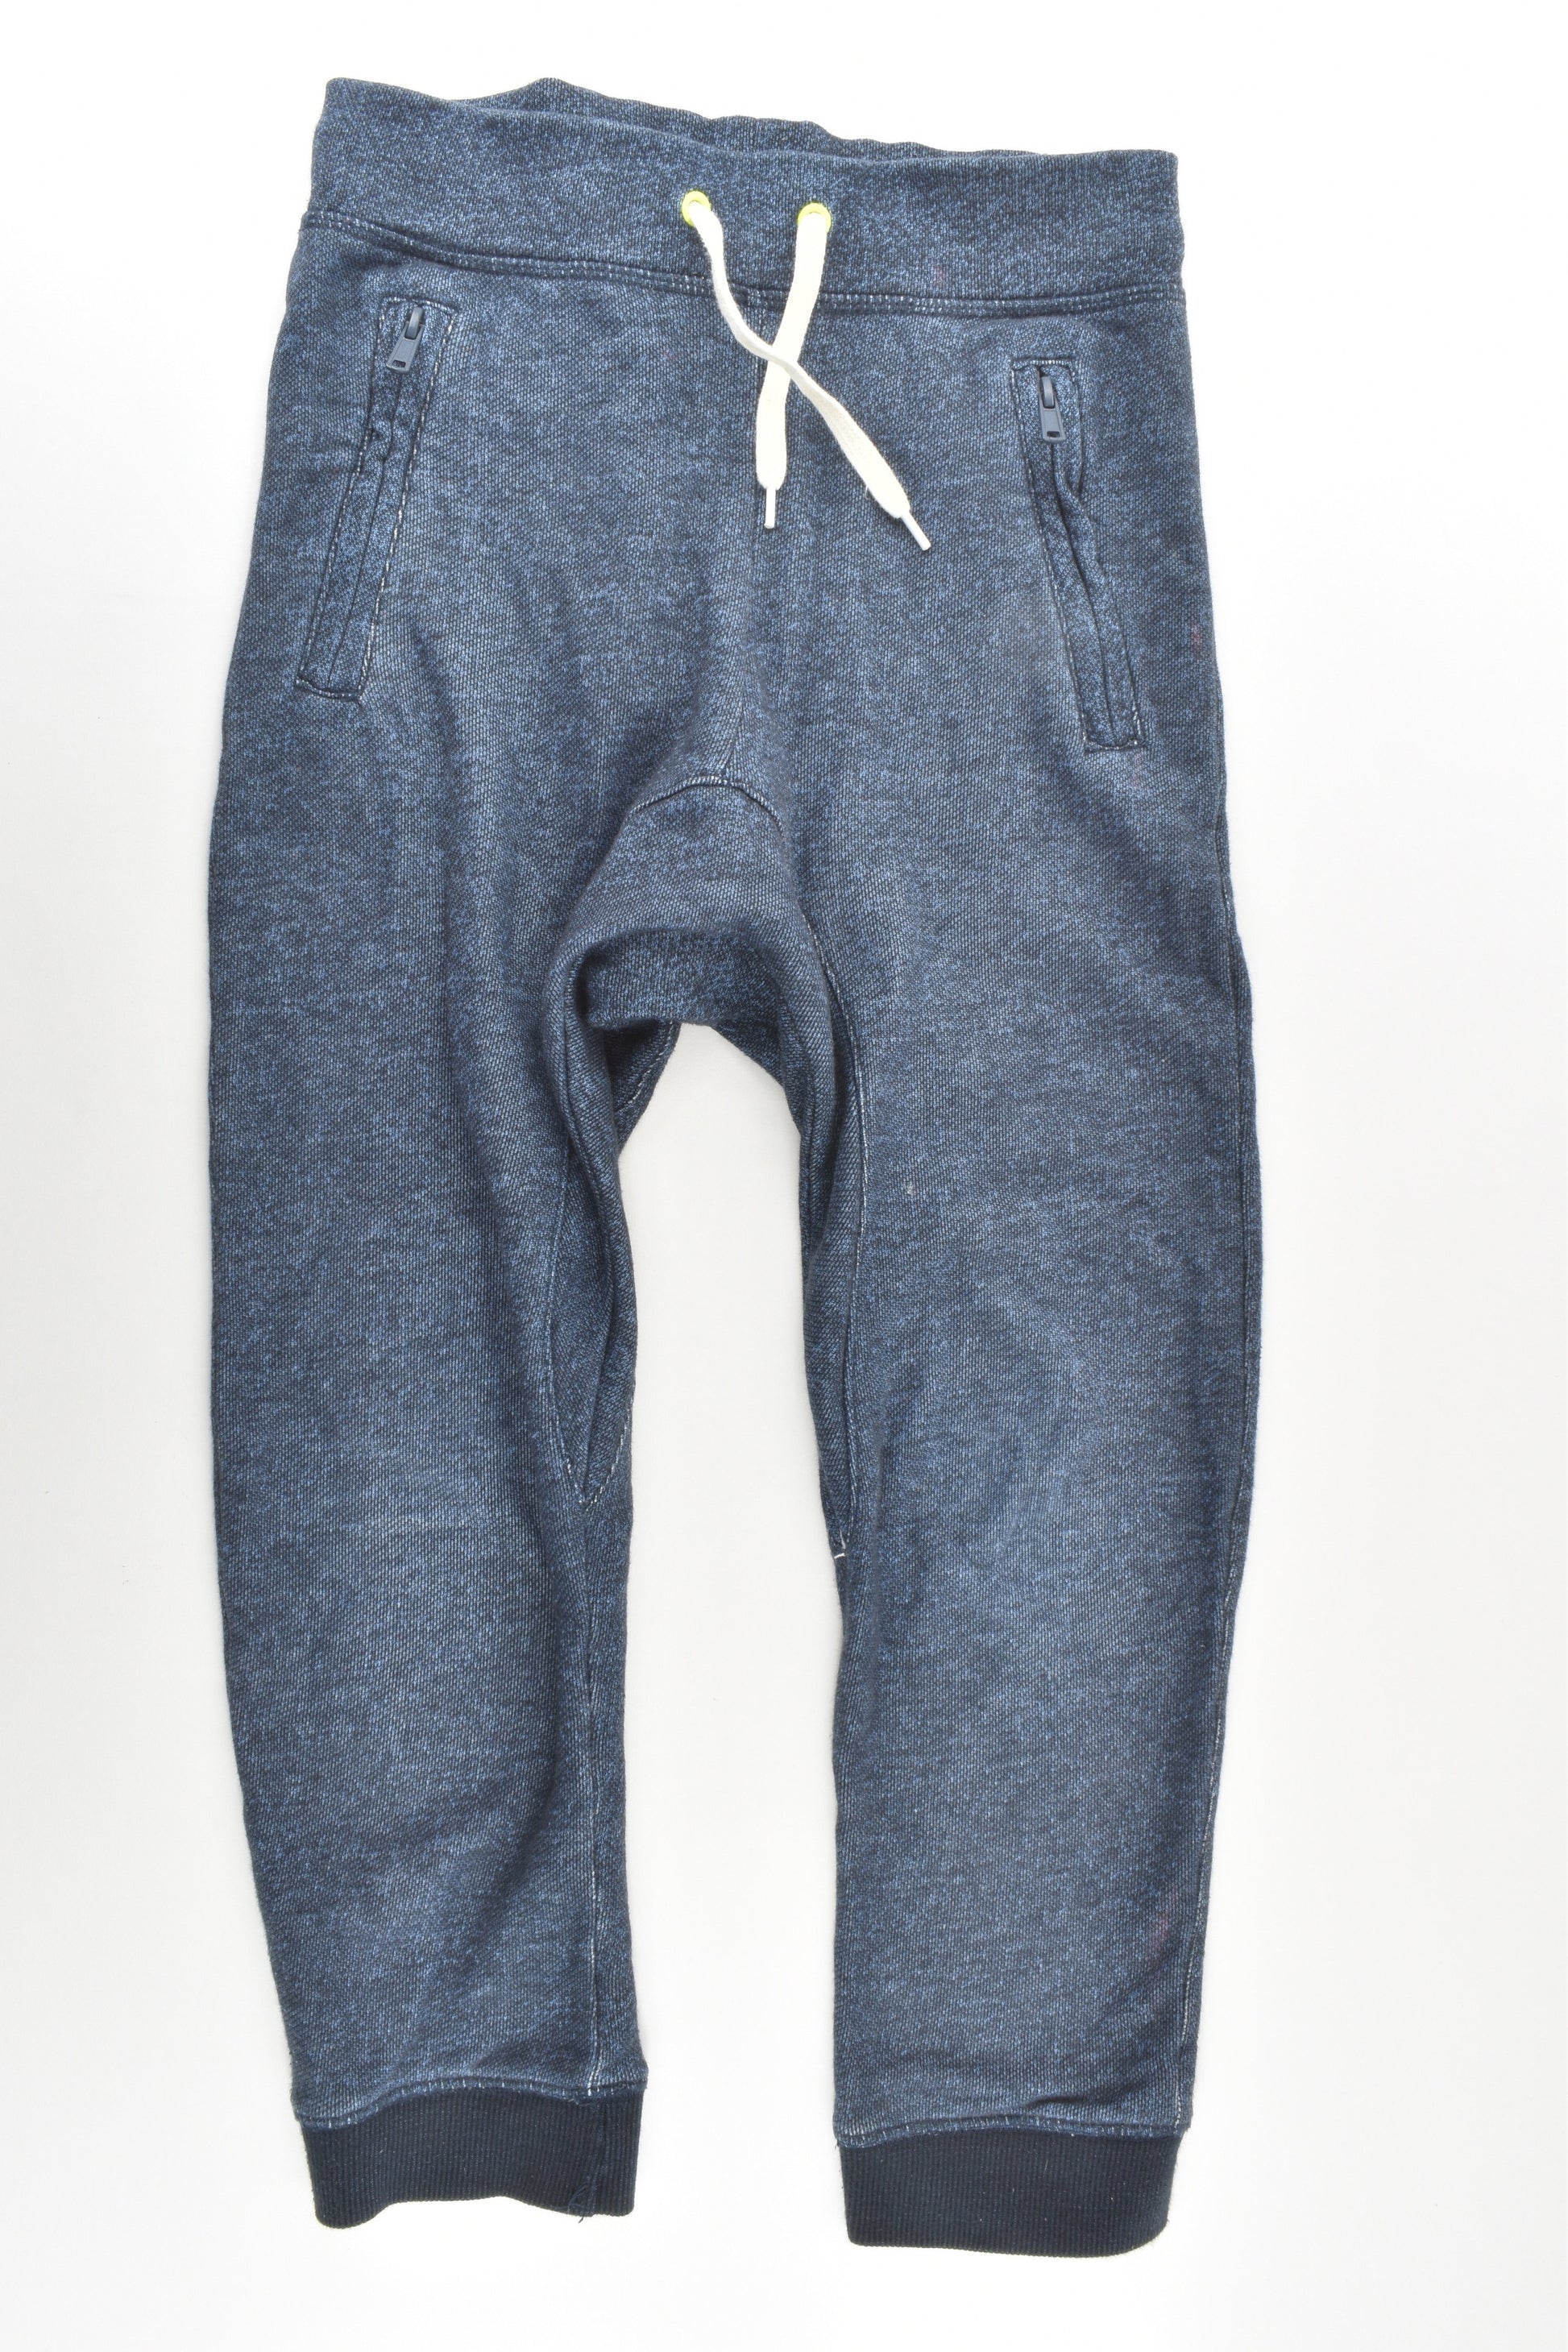 H&M Size 9 (134 cm) Baggy Track Pants